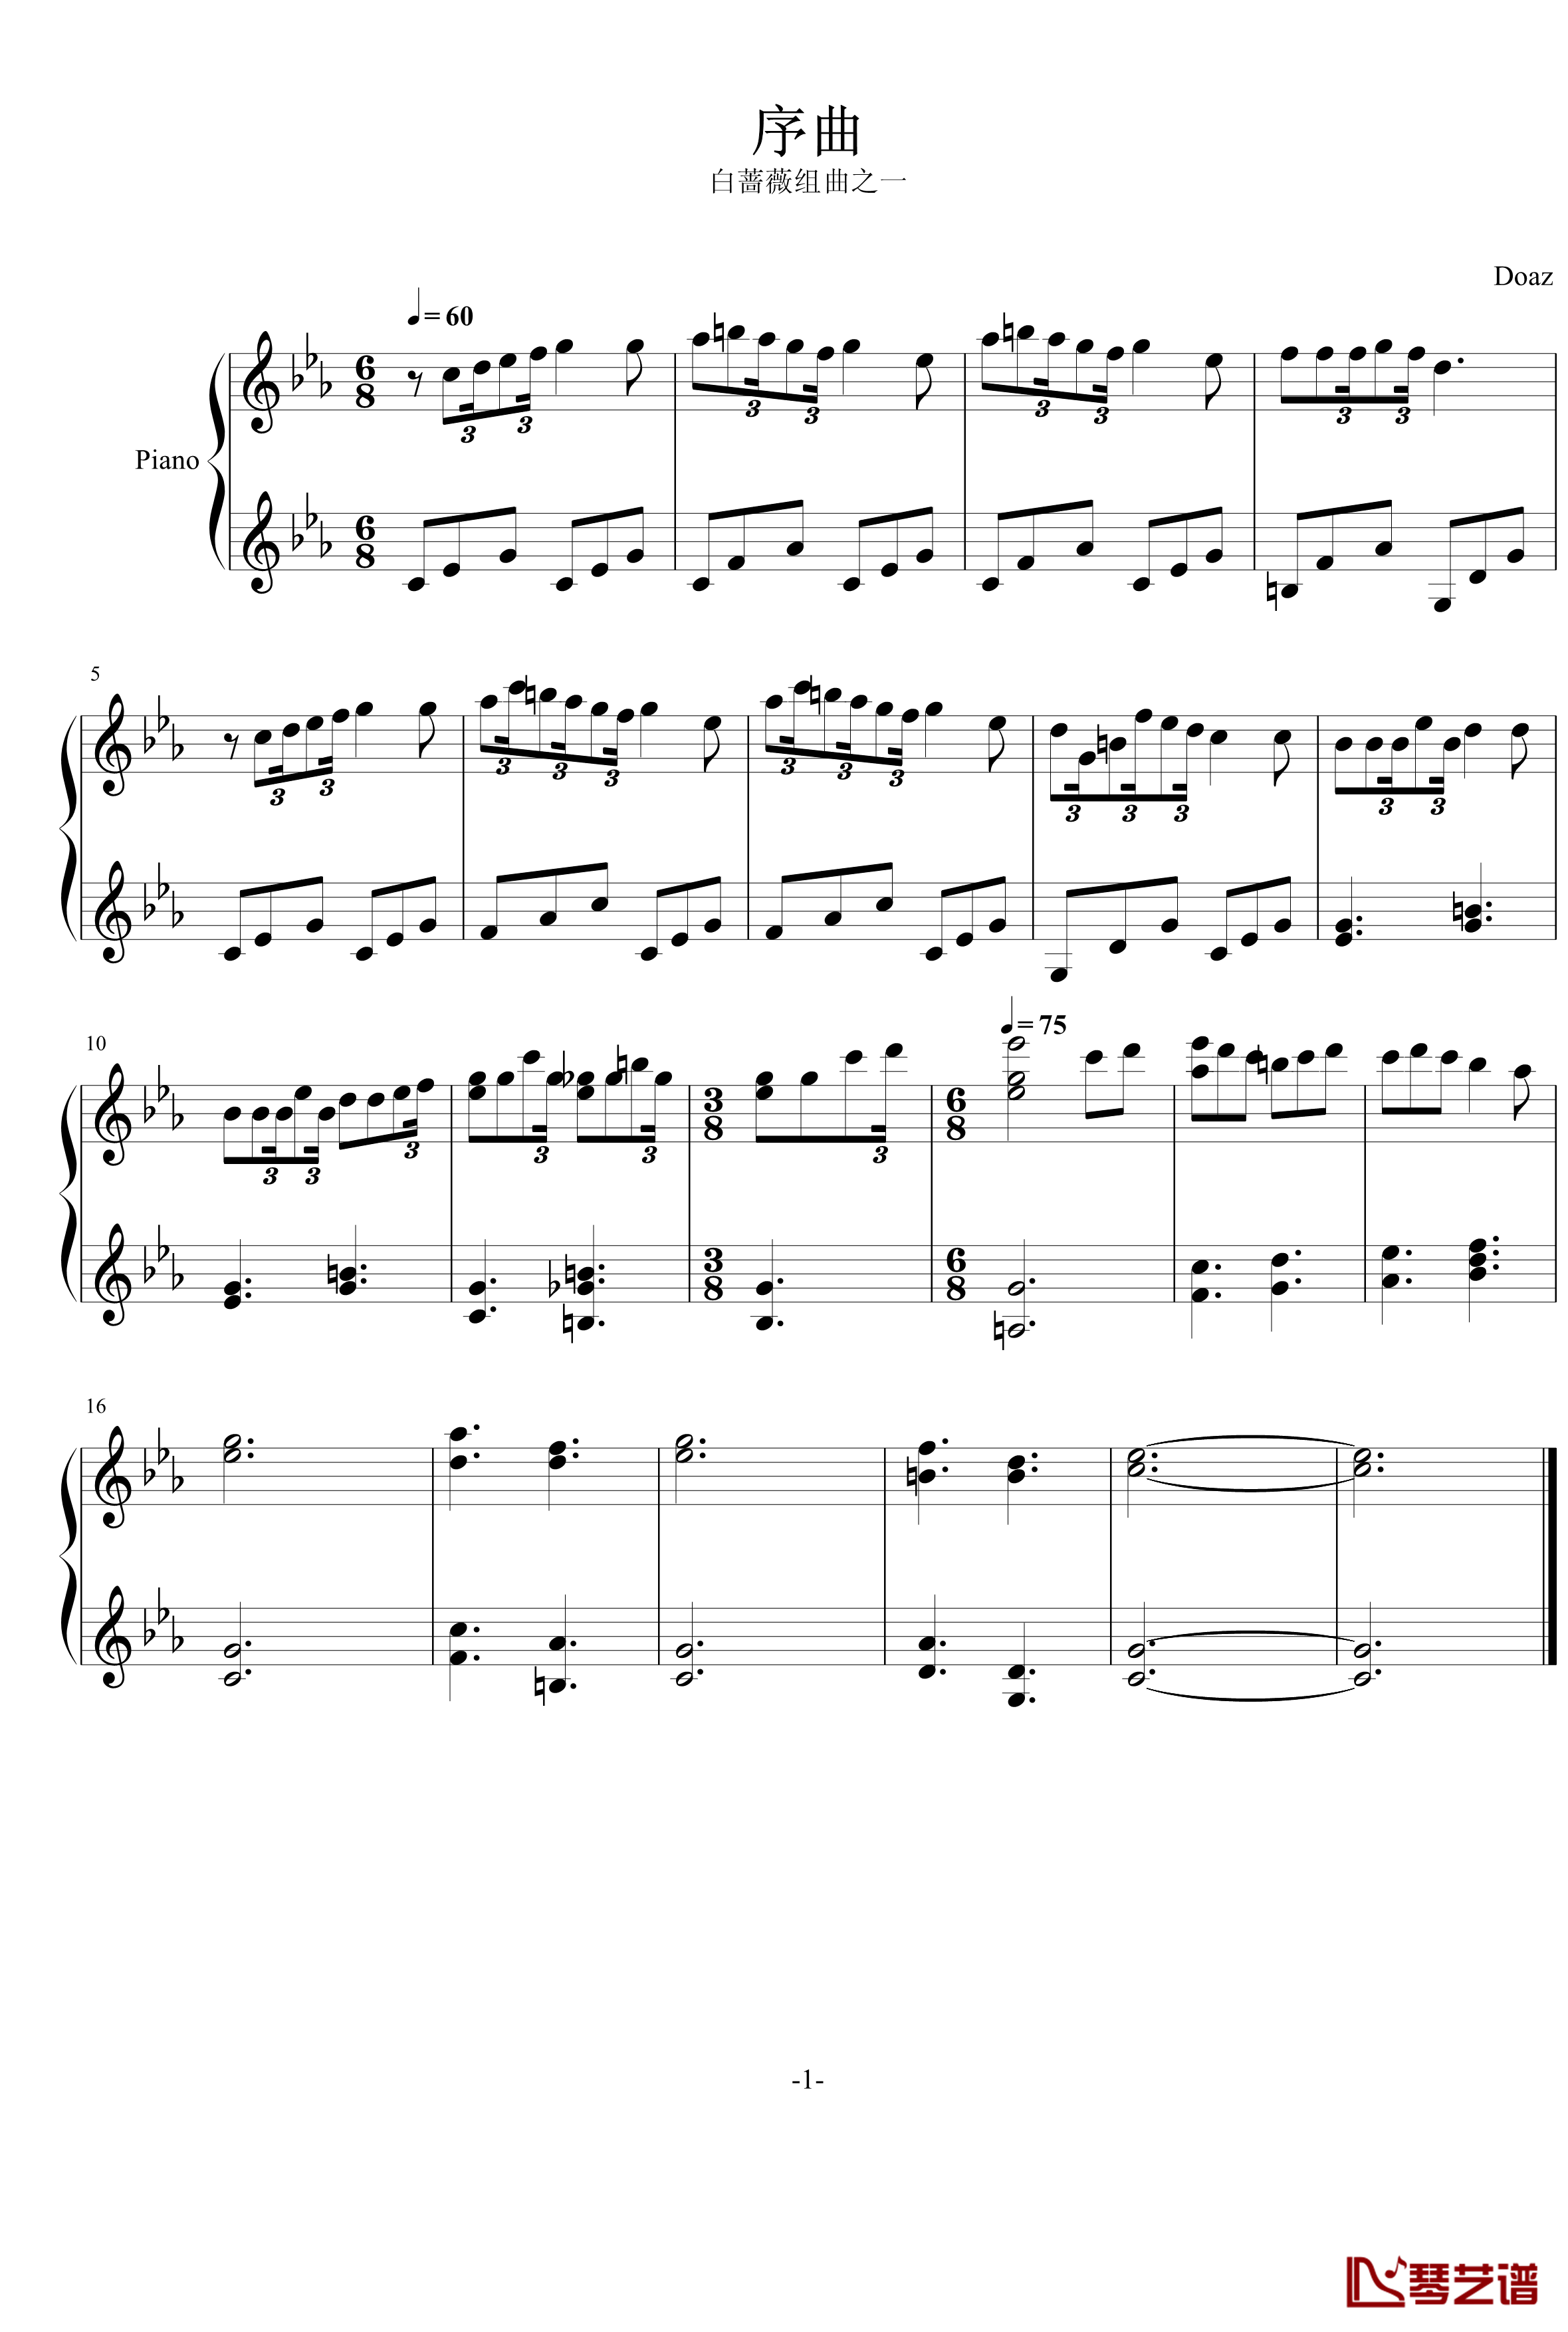 序曲钢琴谱-修改前-aqtq314-白蔷薇组曲